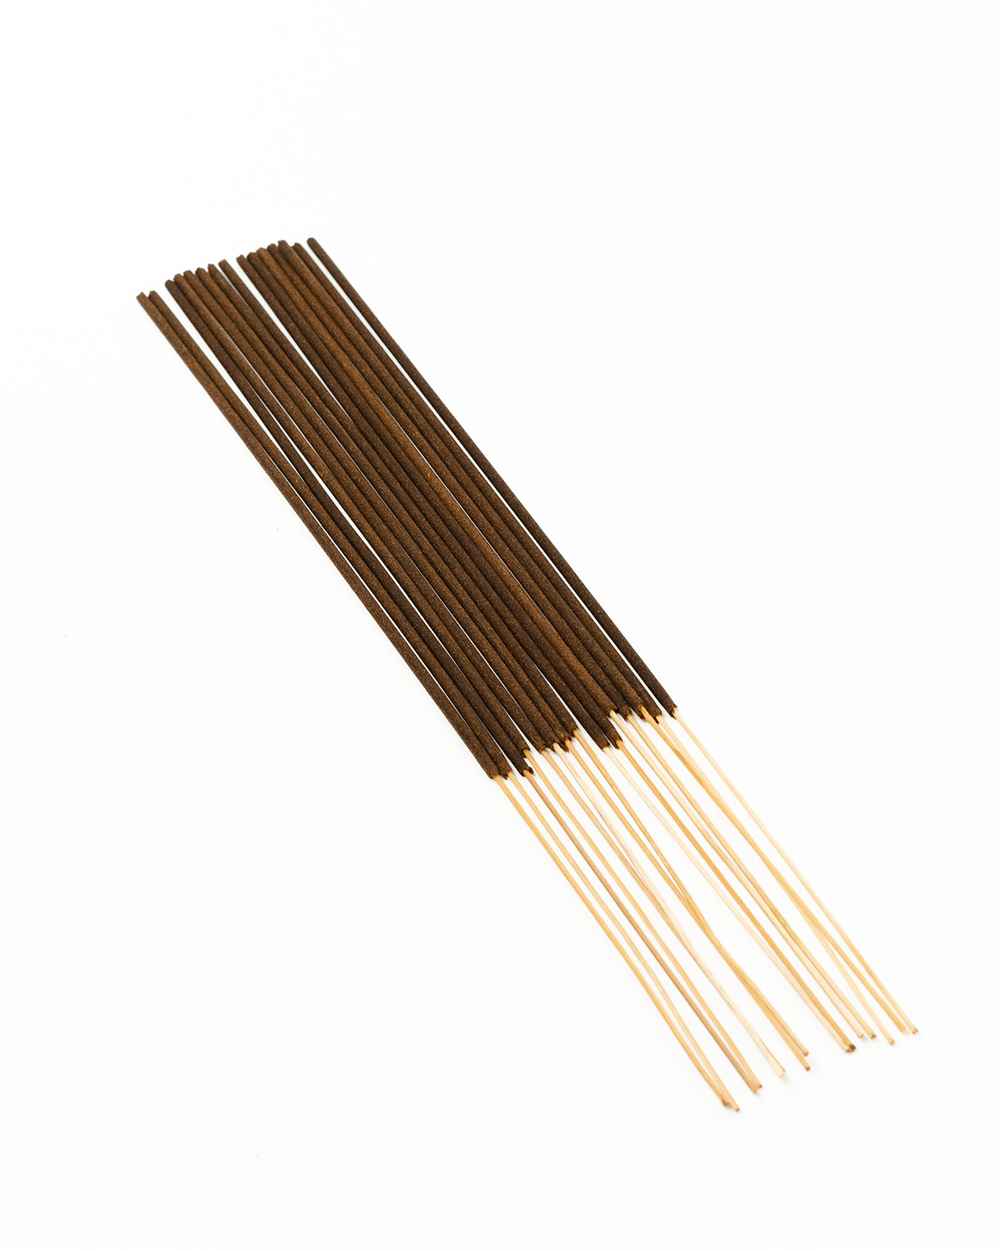 UJI Incense Sticks - 15 Sticks